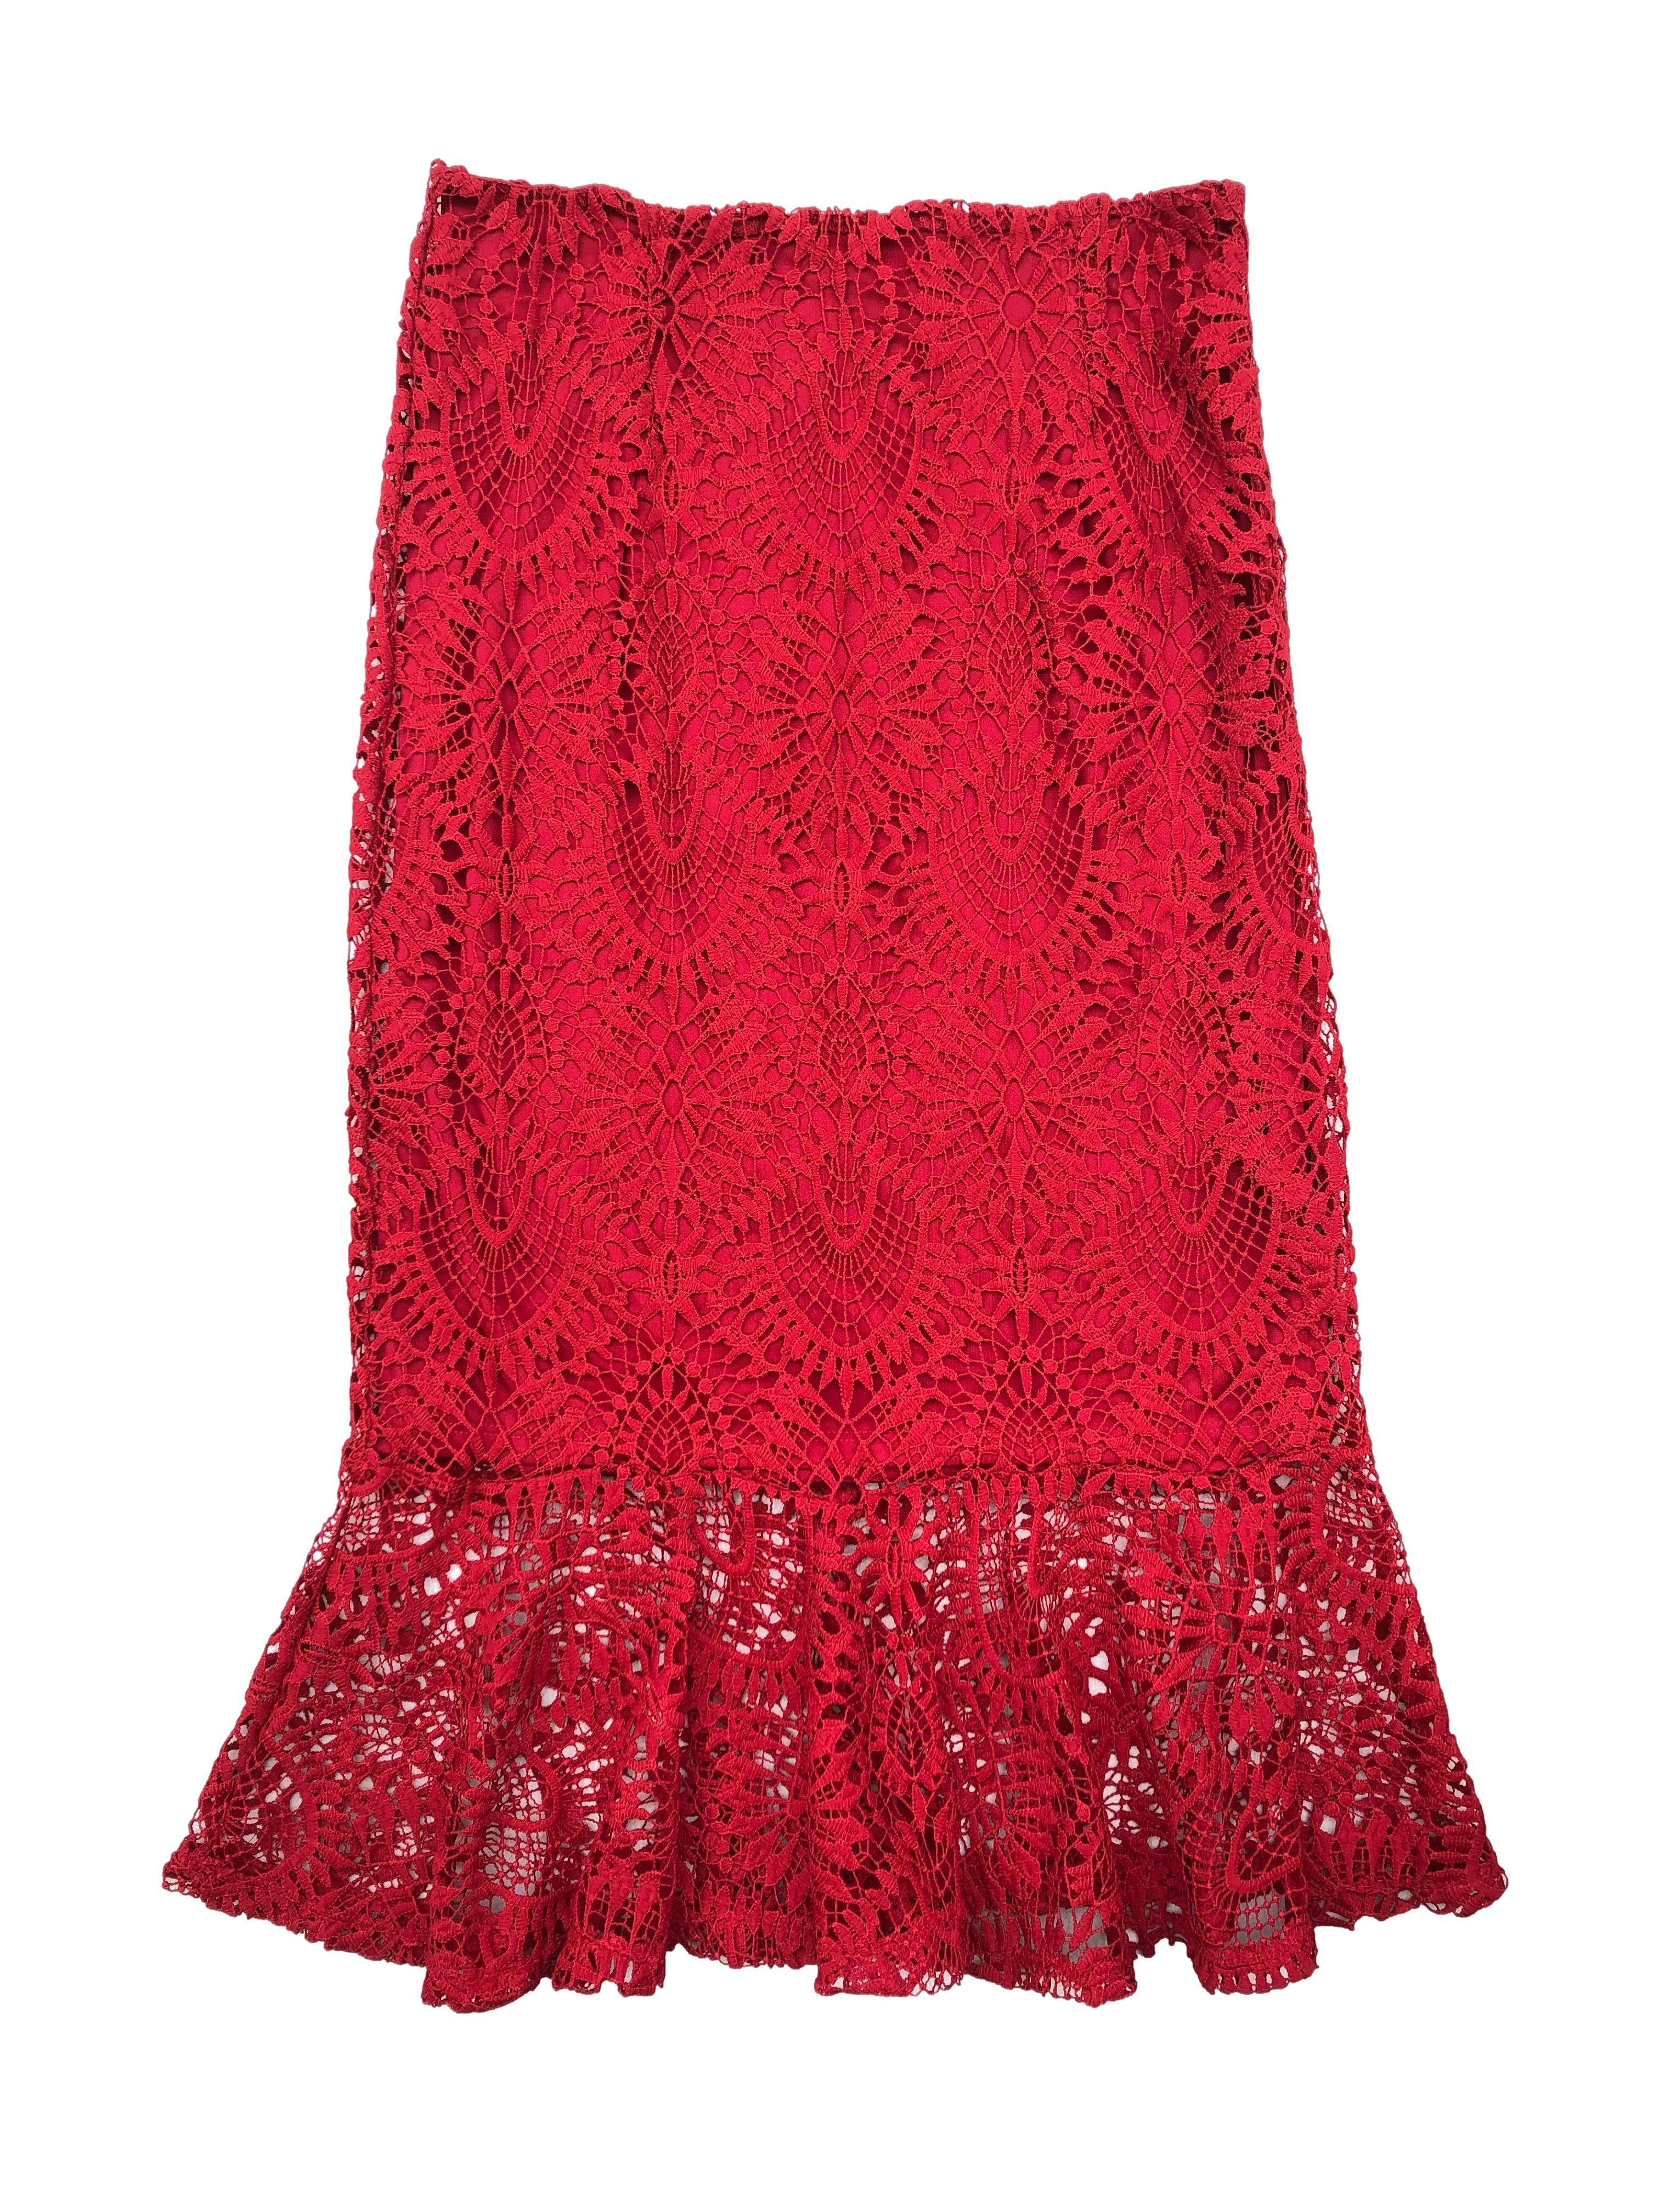 Falda midi Zara de encaje rojo, corte sirena, cierre invisible lateral. Cintura: 70cm. Largo: 74cm